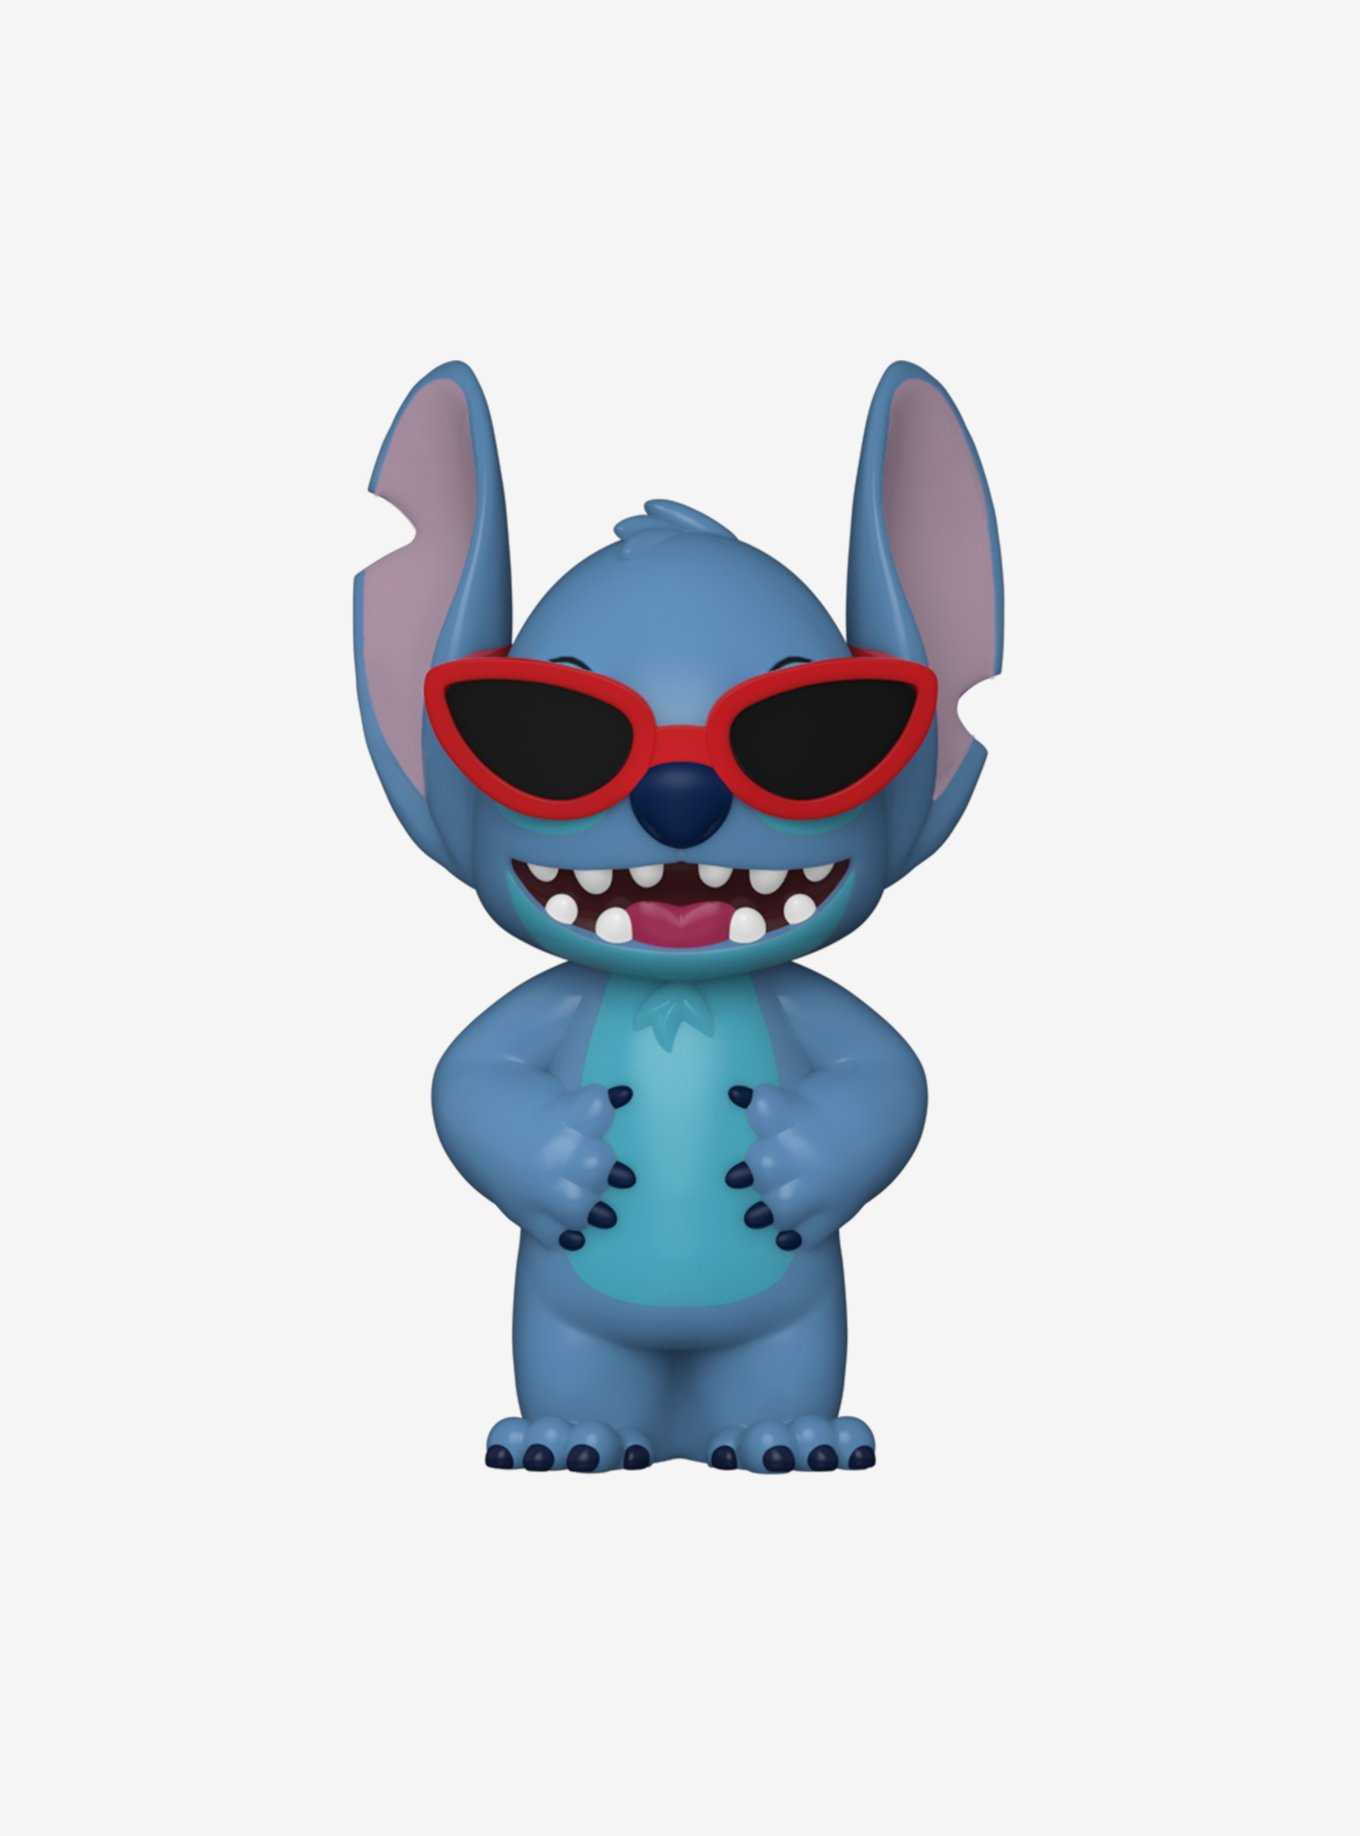 Funko Pop! Deluxe Disney Lilo & Stitch in Bathtub 2022 Hot Topic